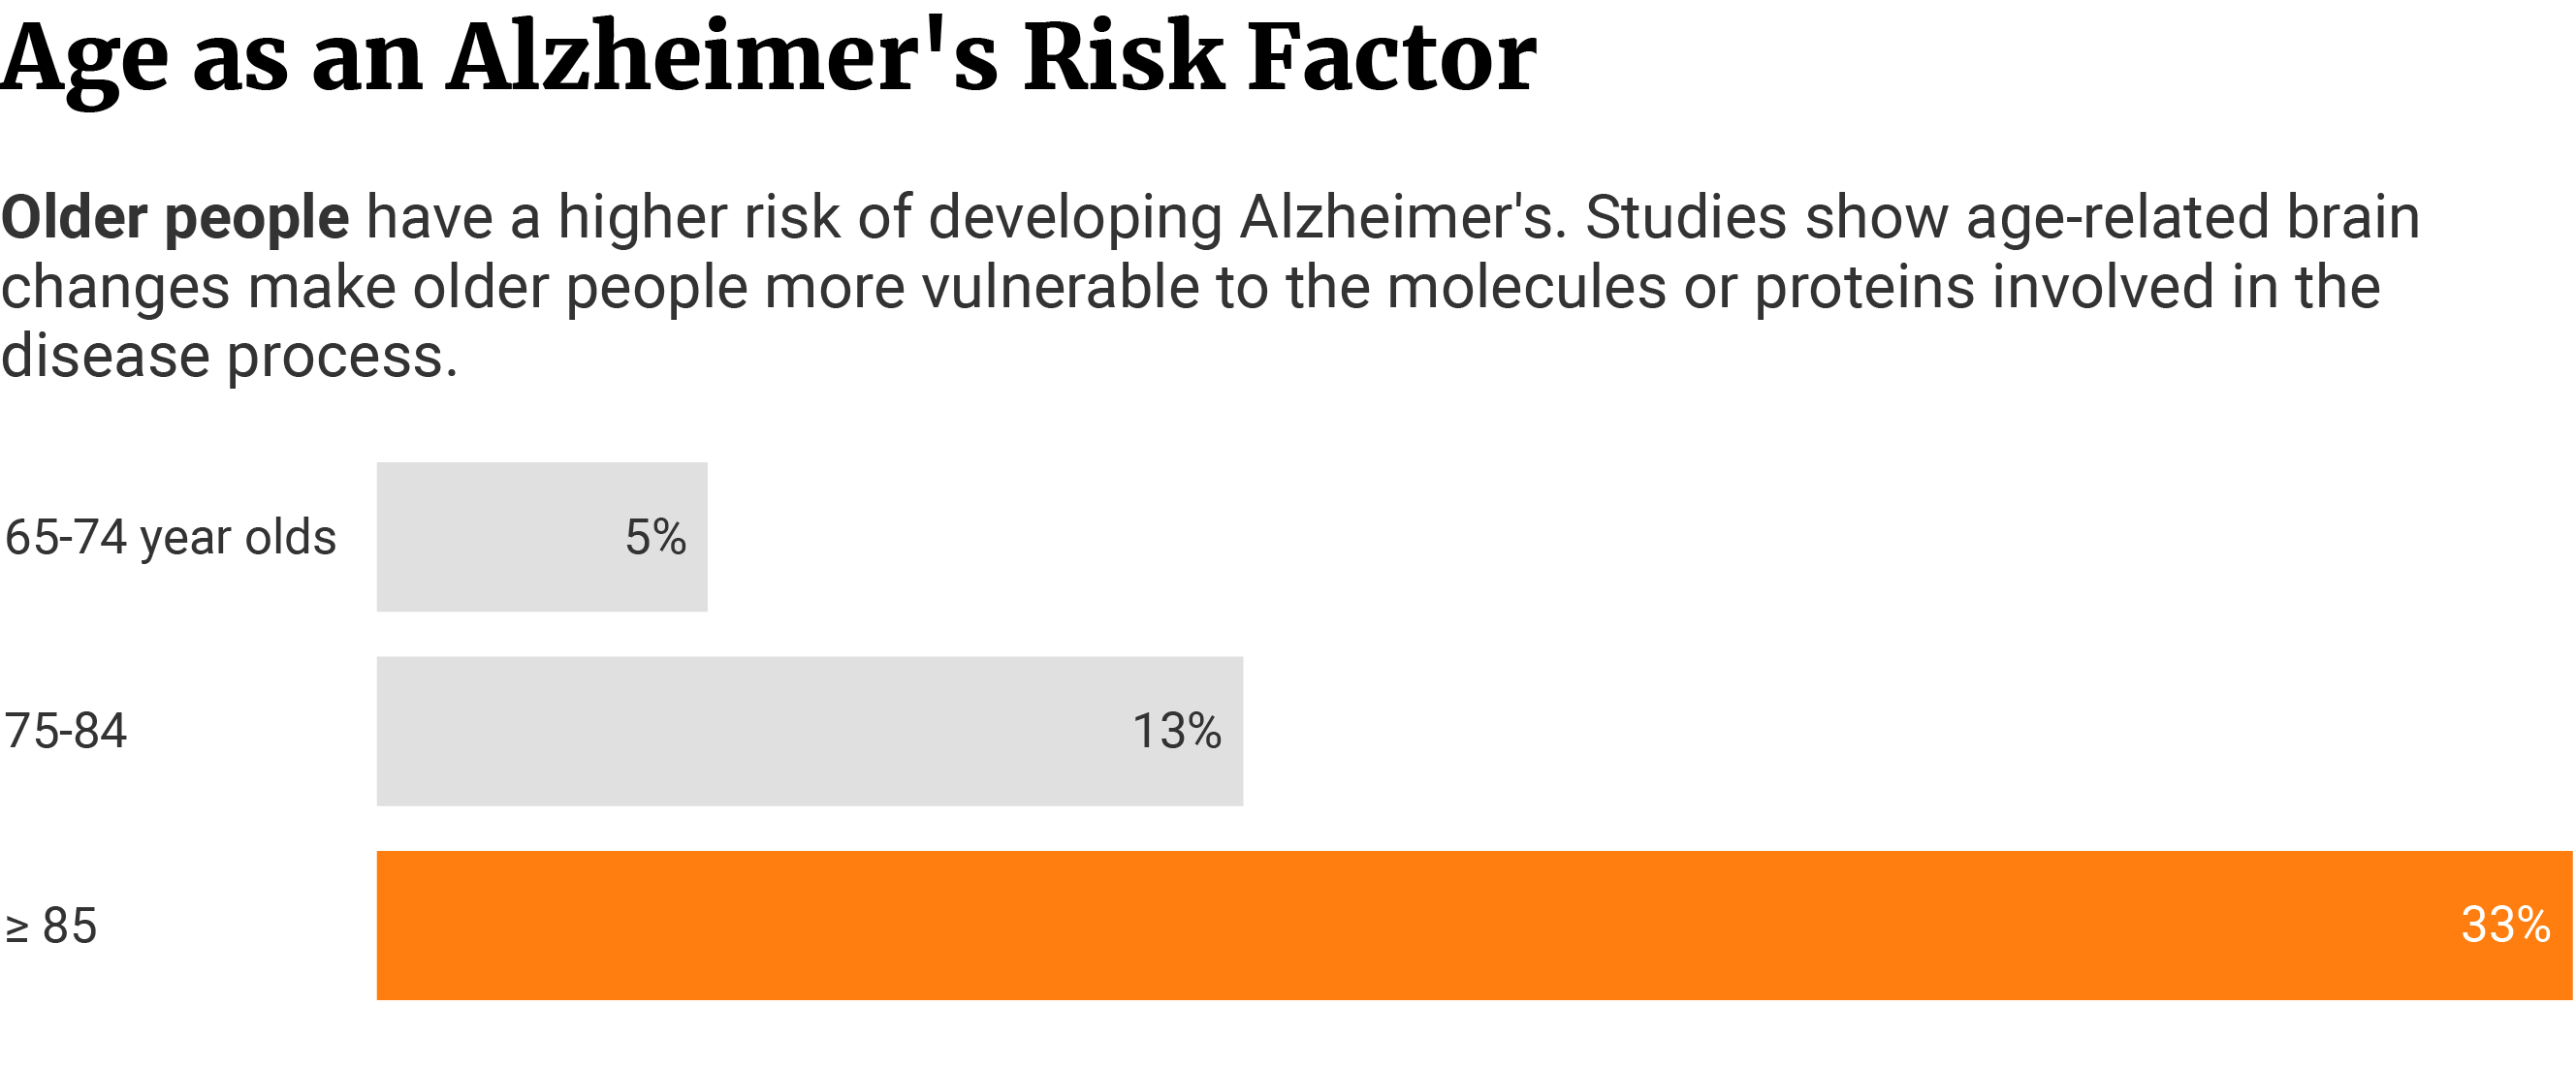 Horizontal bar chart that shows age as an Alzheimer's risk factor.